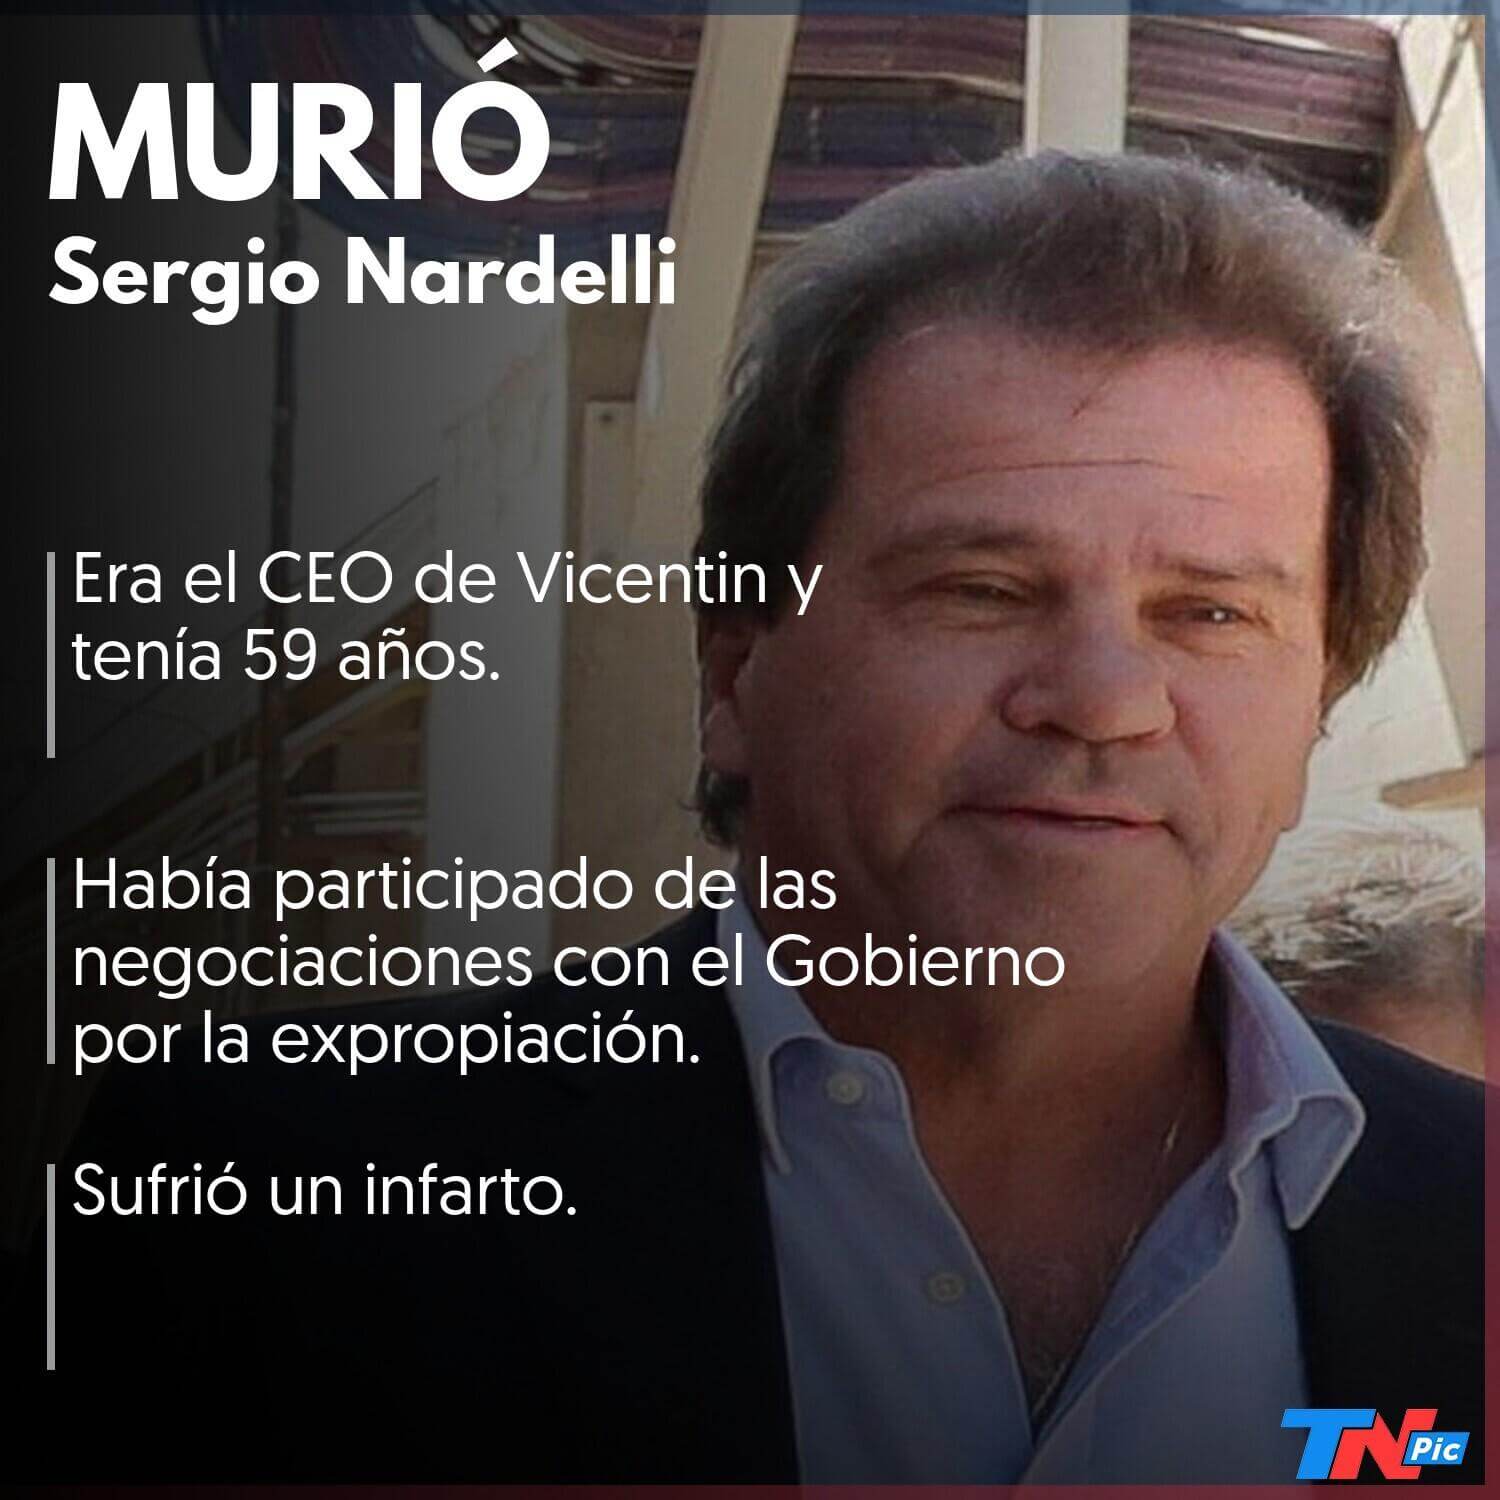 Murió Sergio Nardelli, CEO de Vicentin